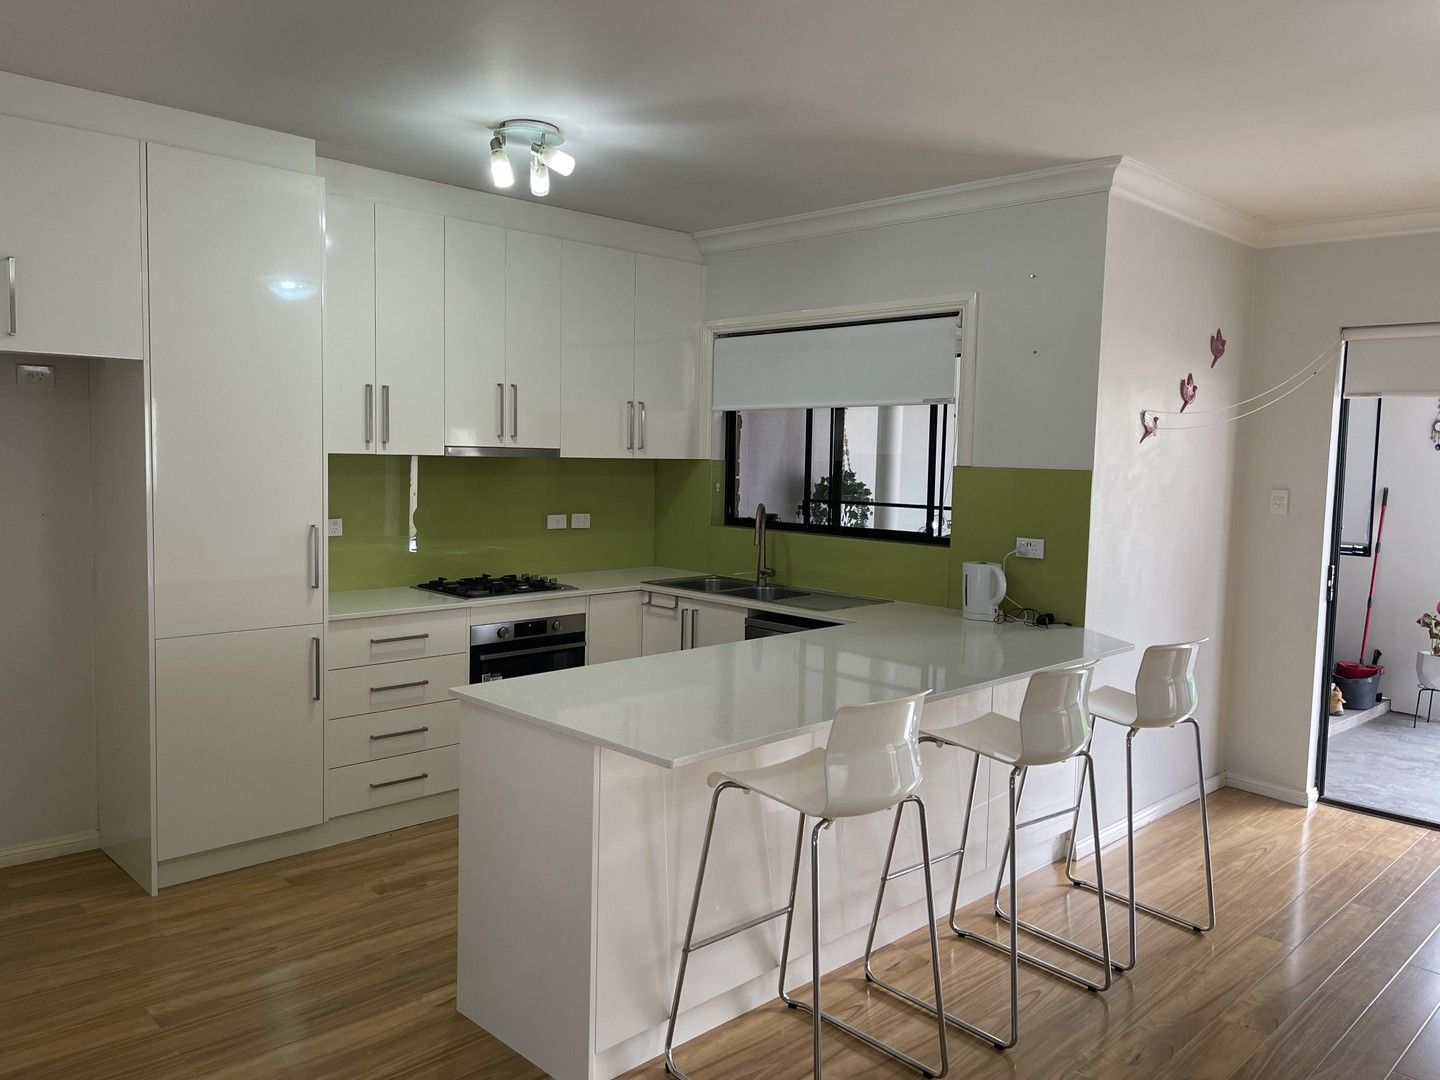 2 bedrooms House in 16A Ettalong Street AUBURN NSW, 2144